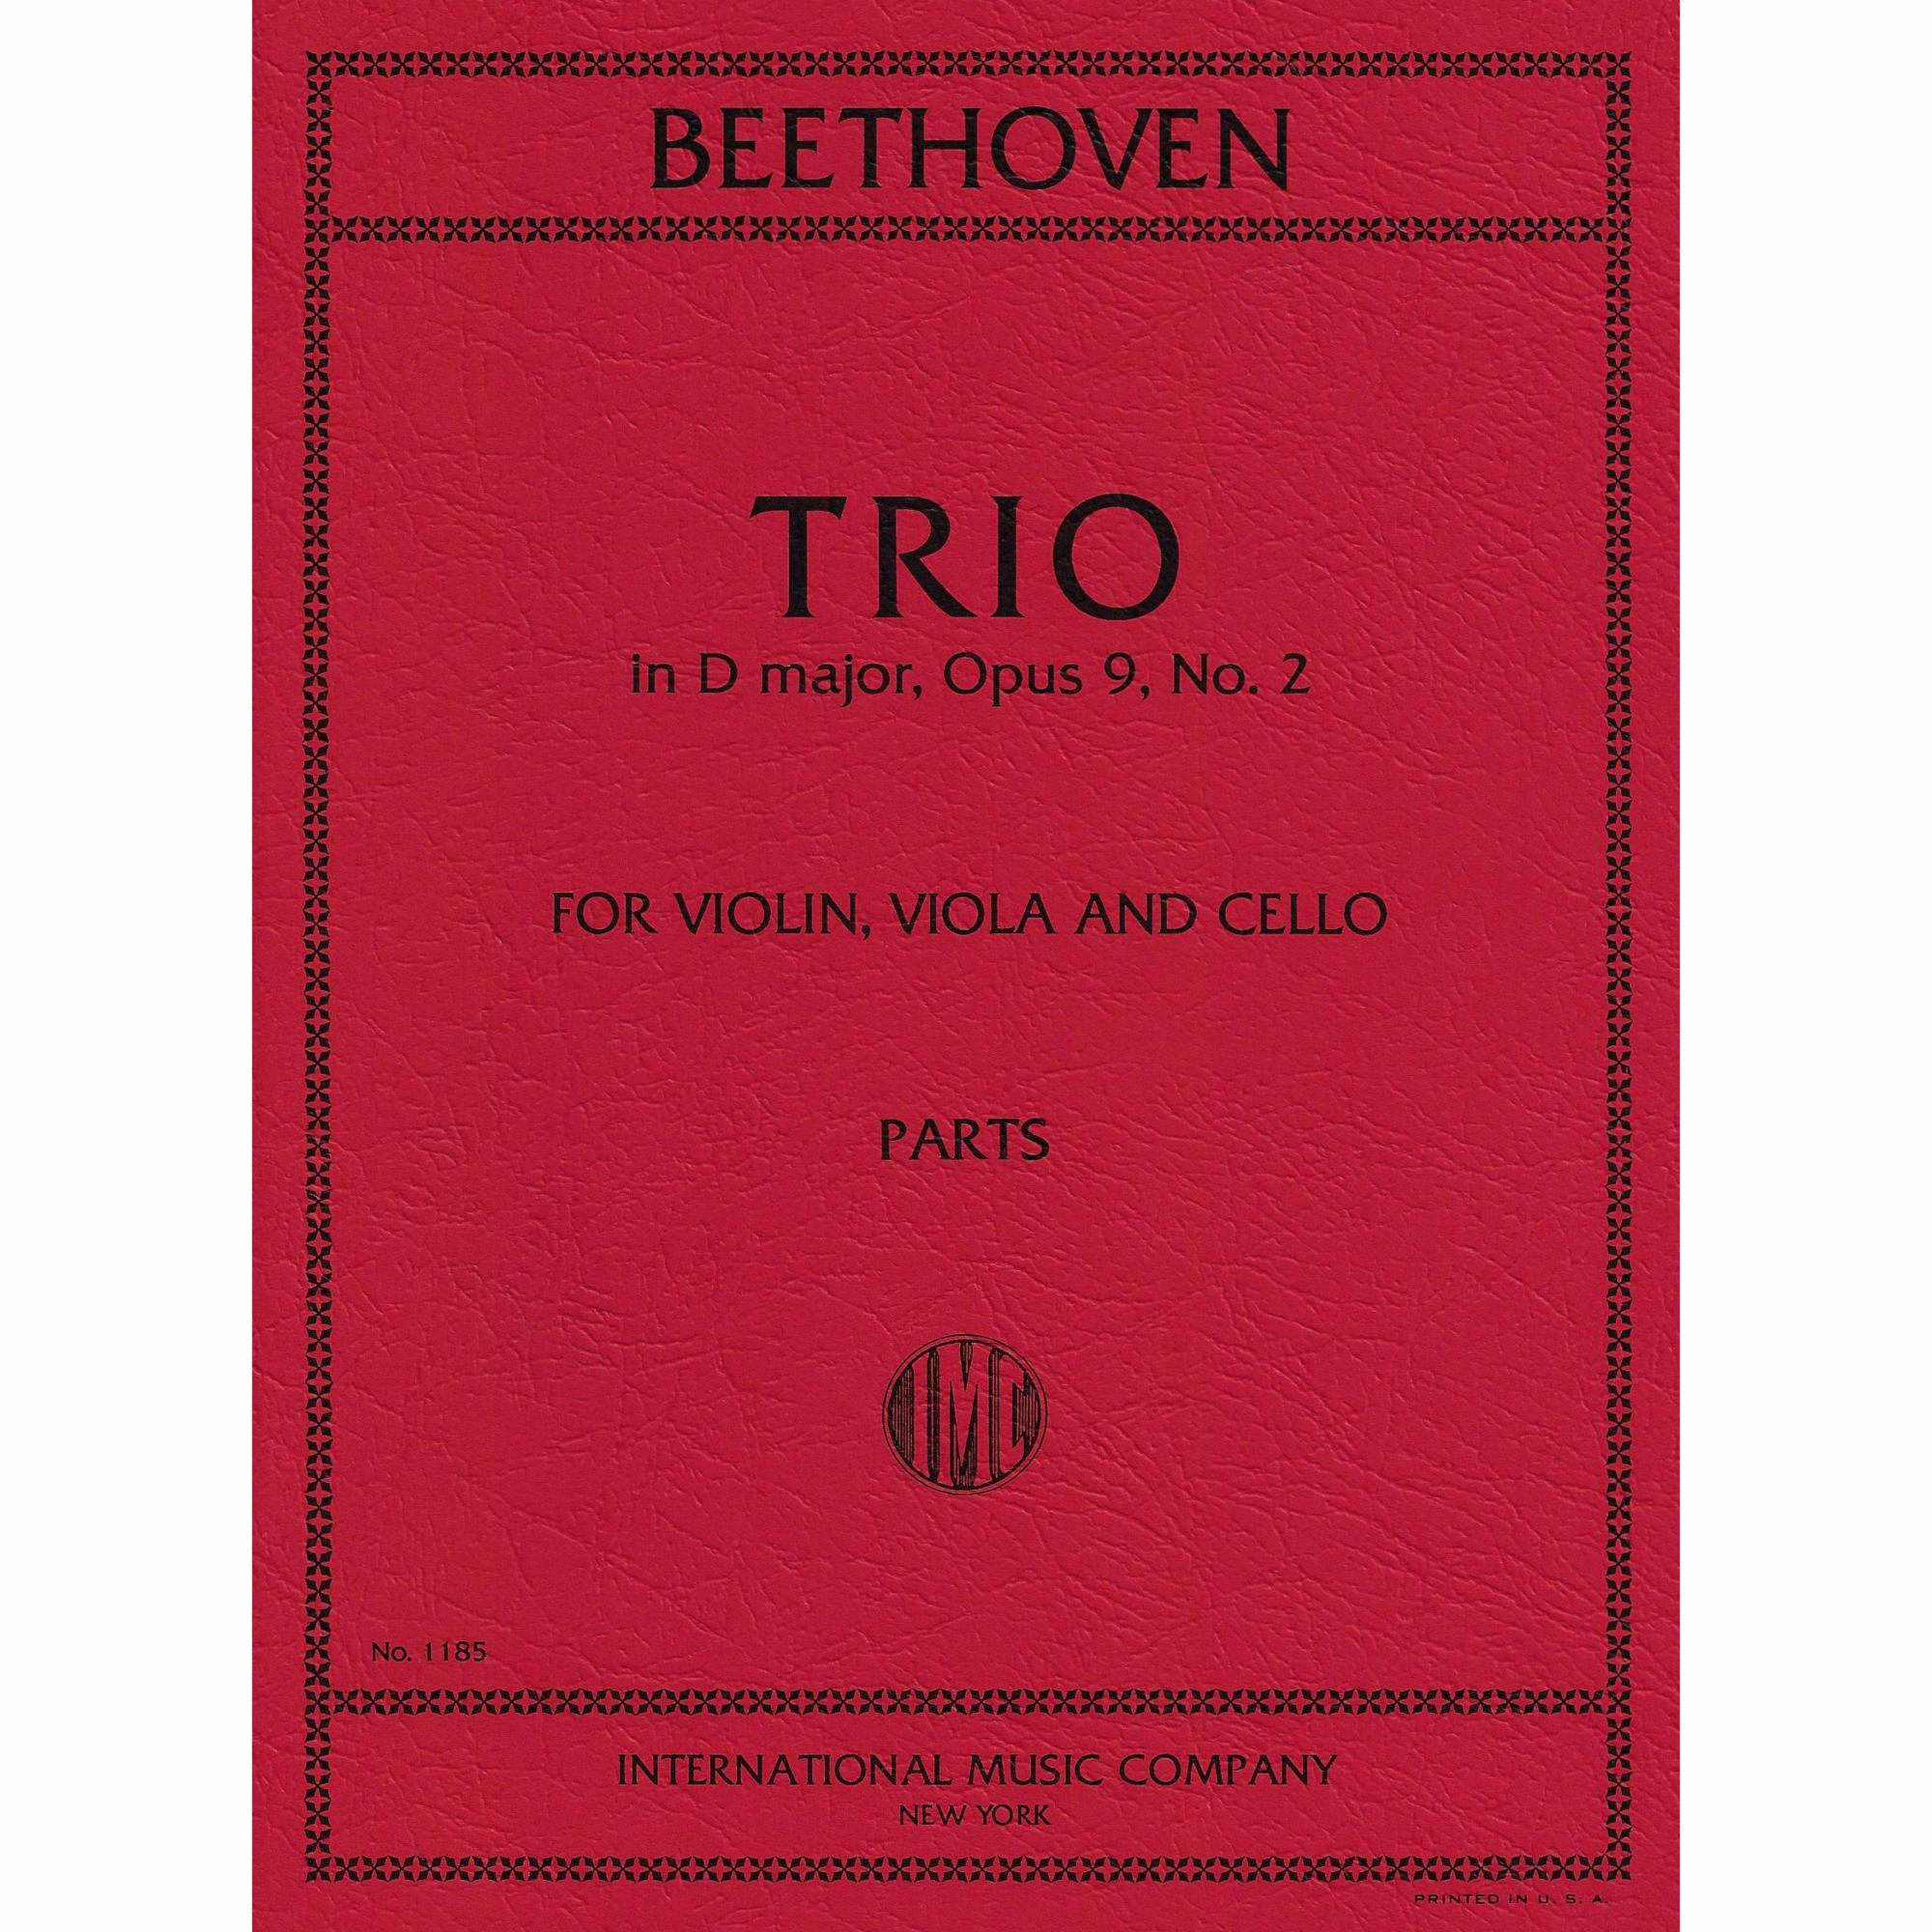 Beethoven -- Trio in D Major, Op. 9, No. 2 for Violin, Viola, and Cello